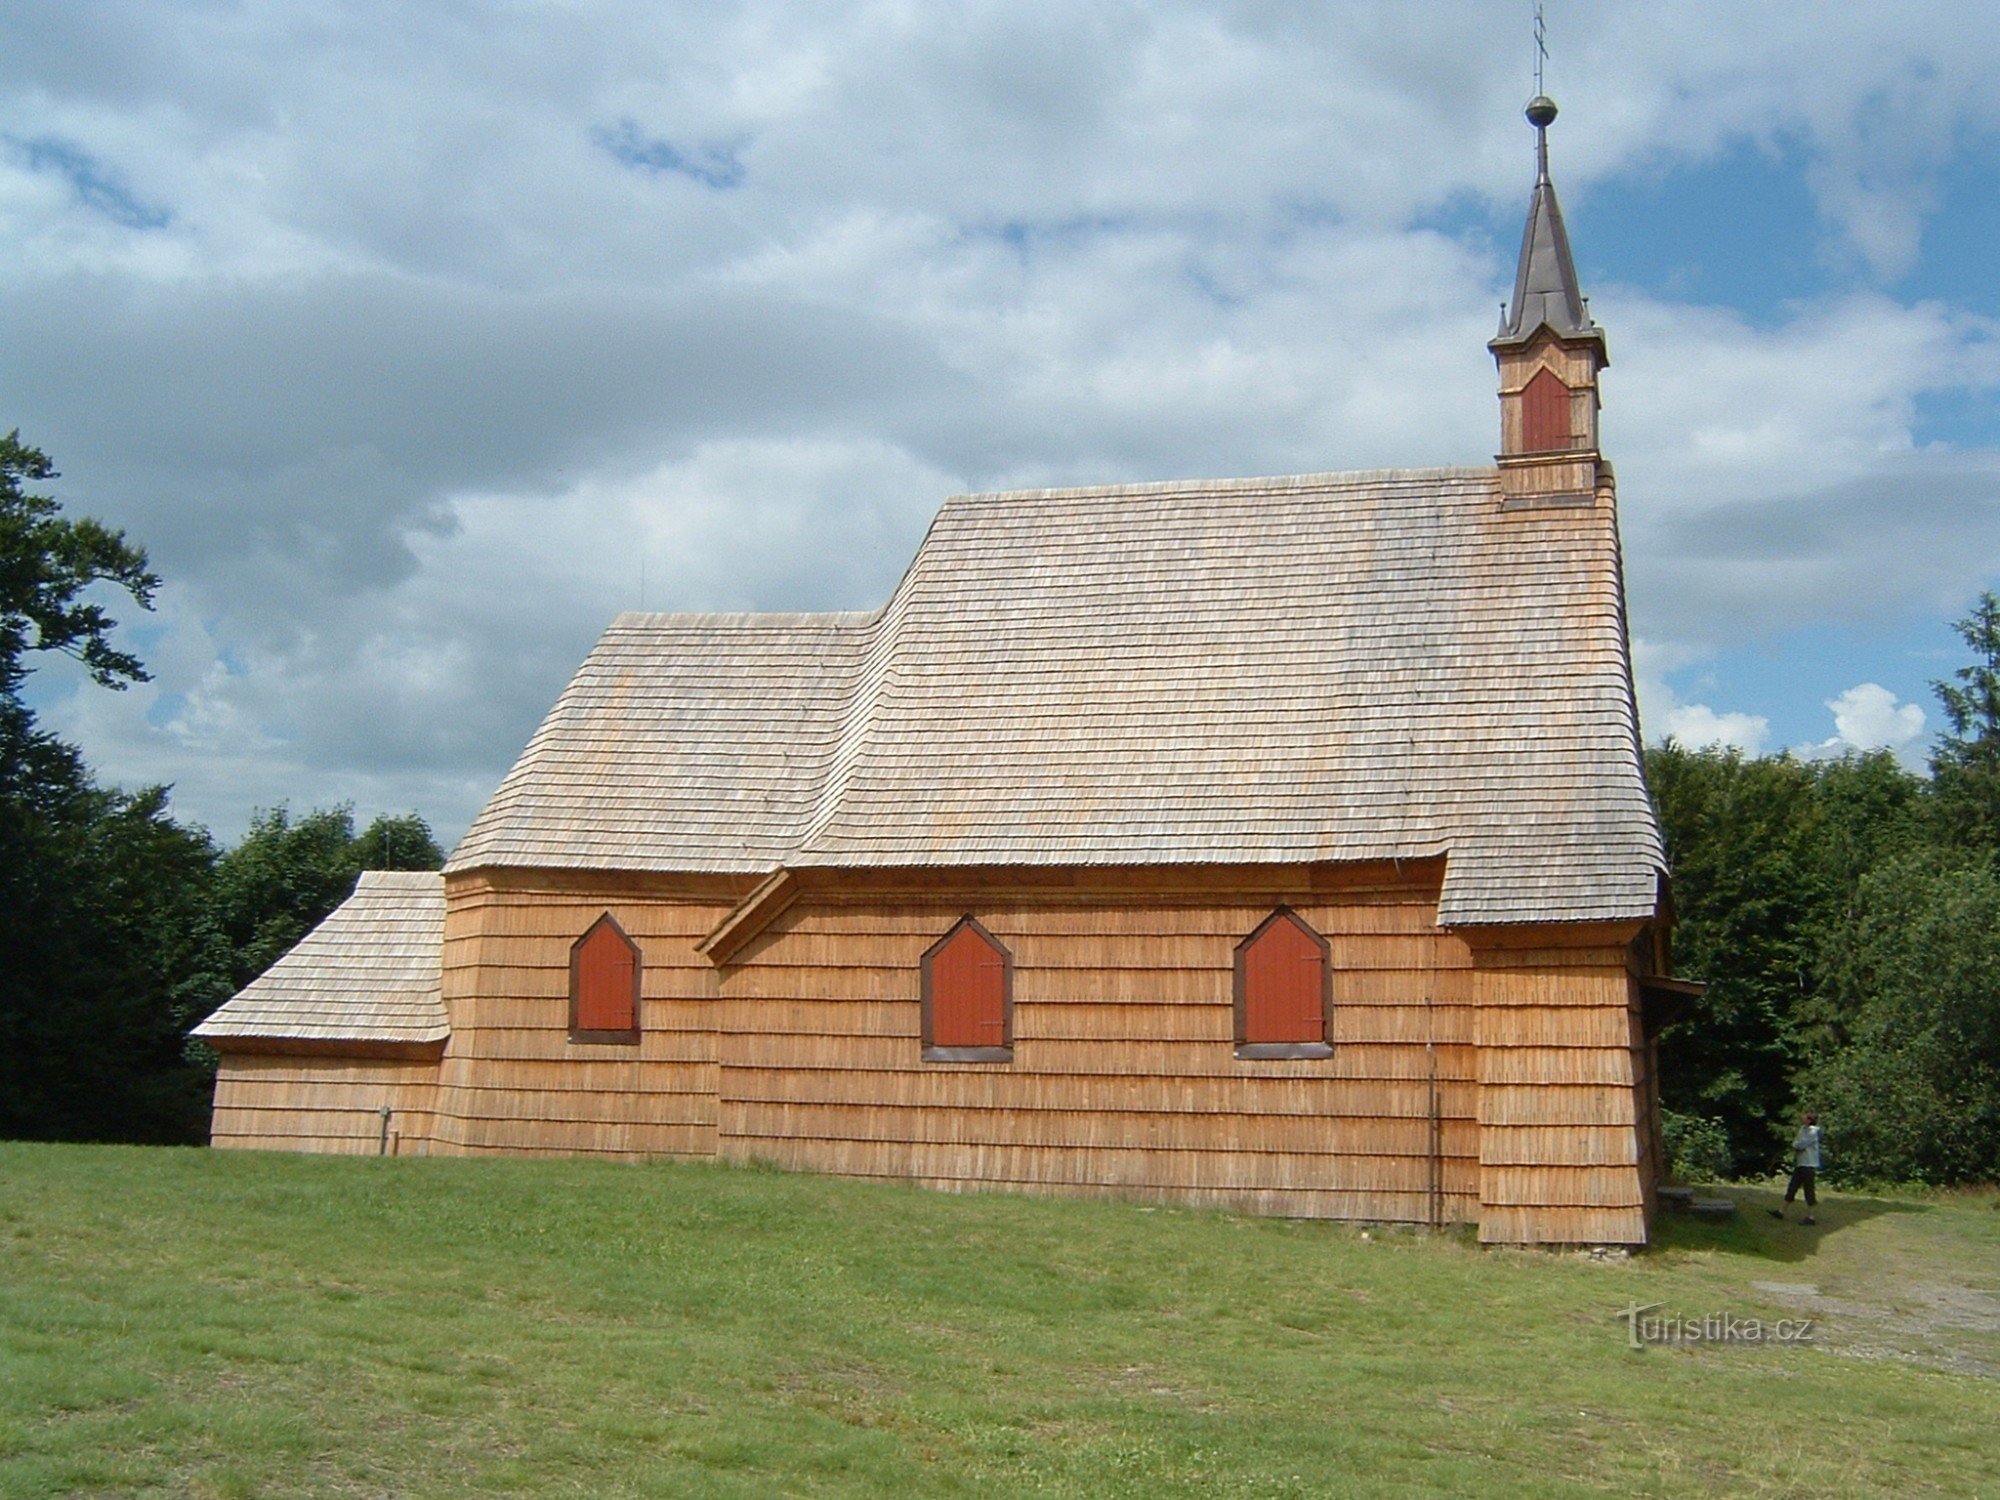 St. Anthony's houten kerk